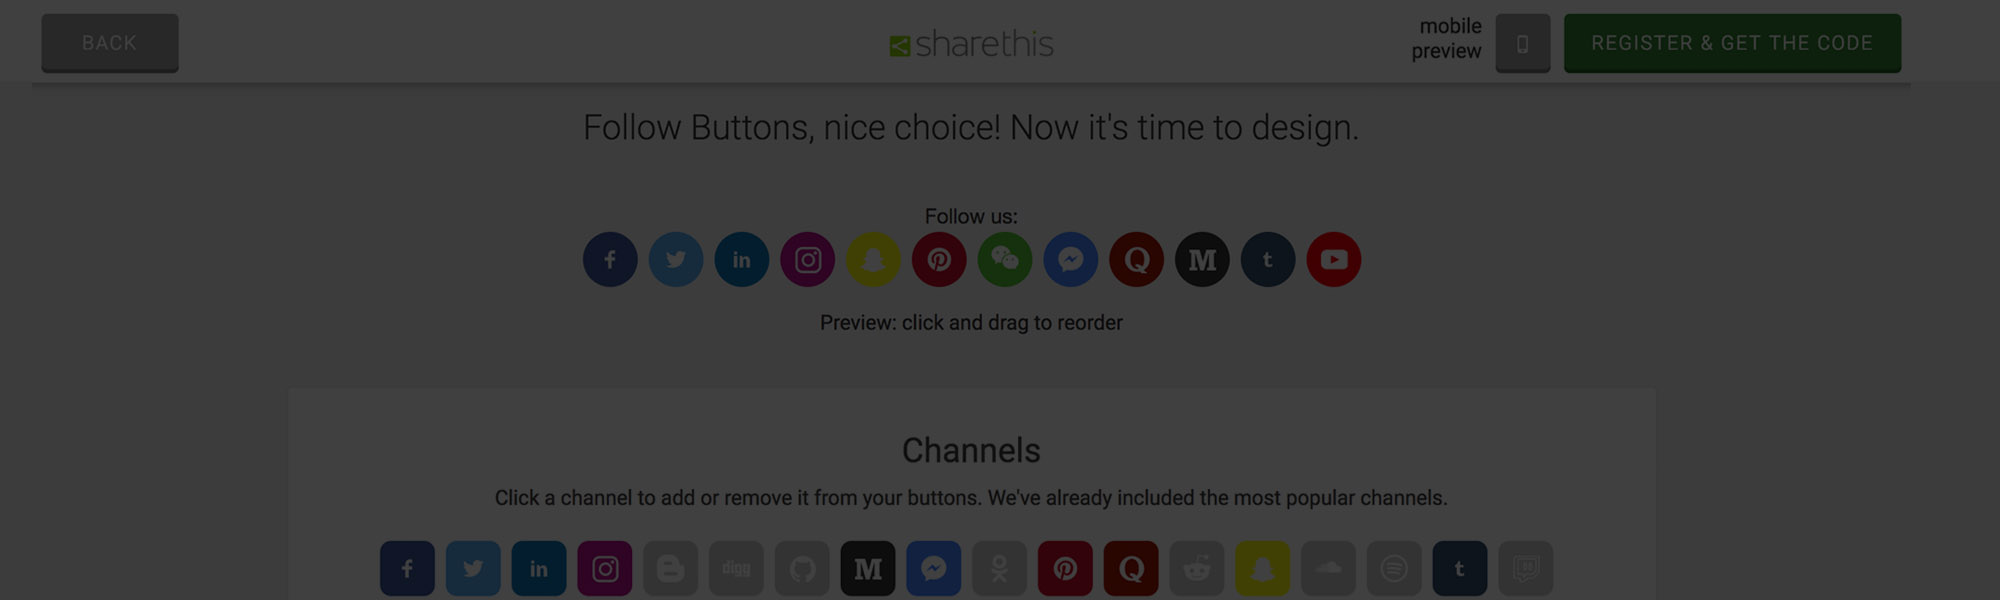 ShareThis フォローボタンのご紹介です。美しく、素早く設置でき、設定も簡単です。